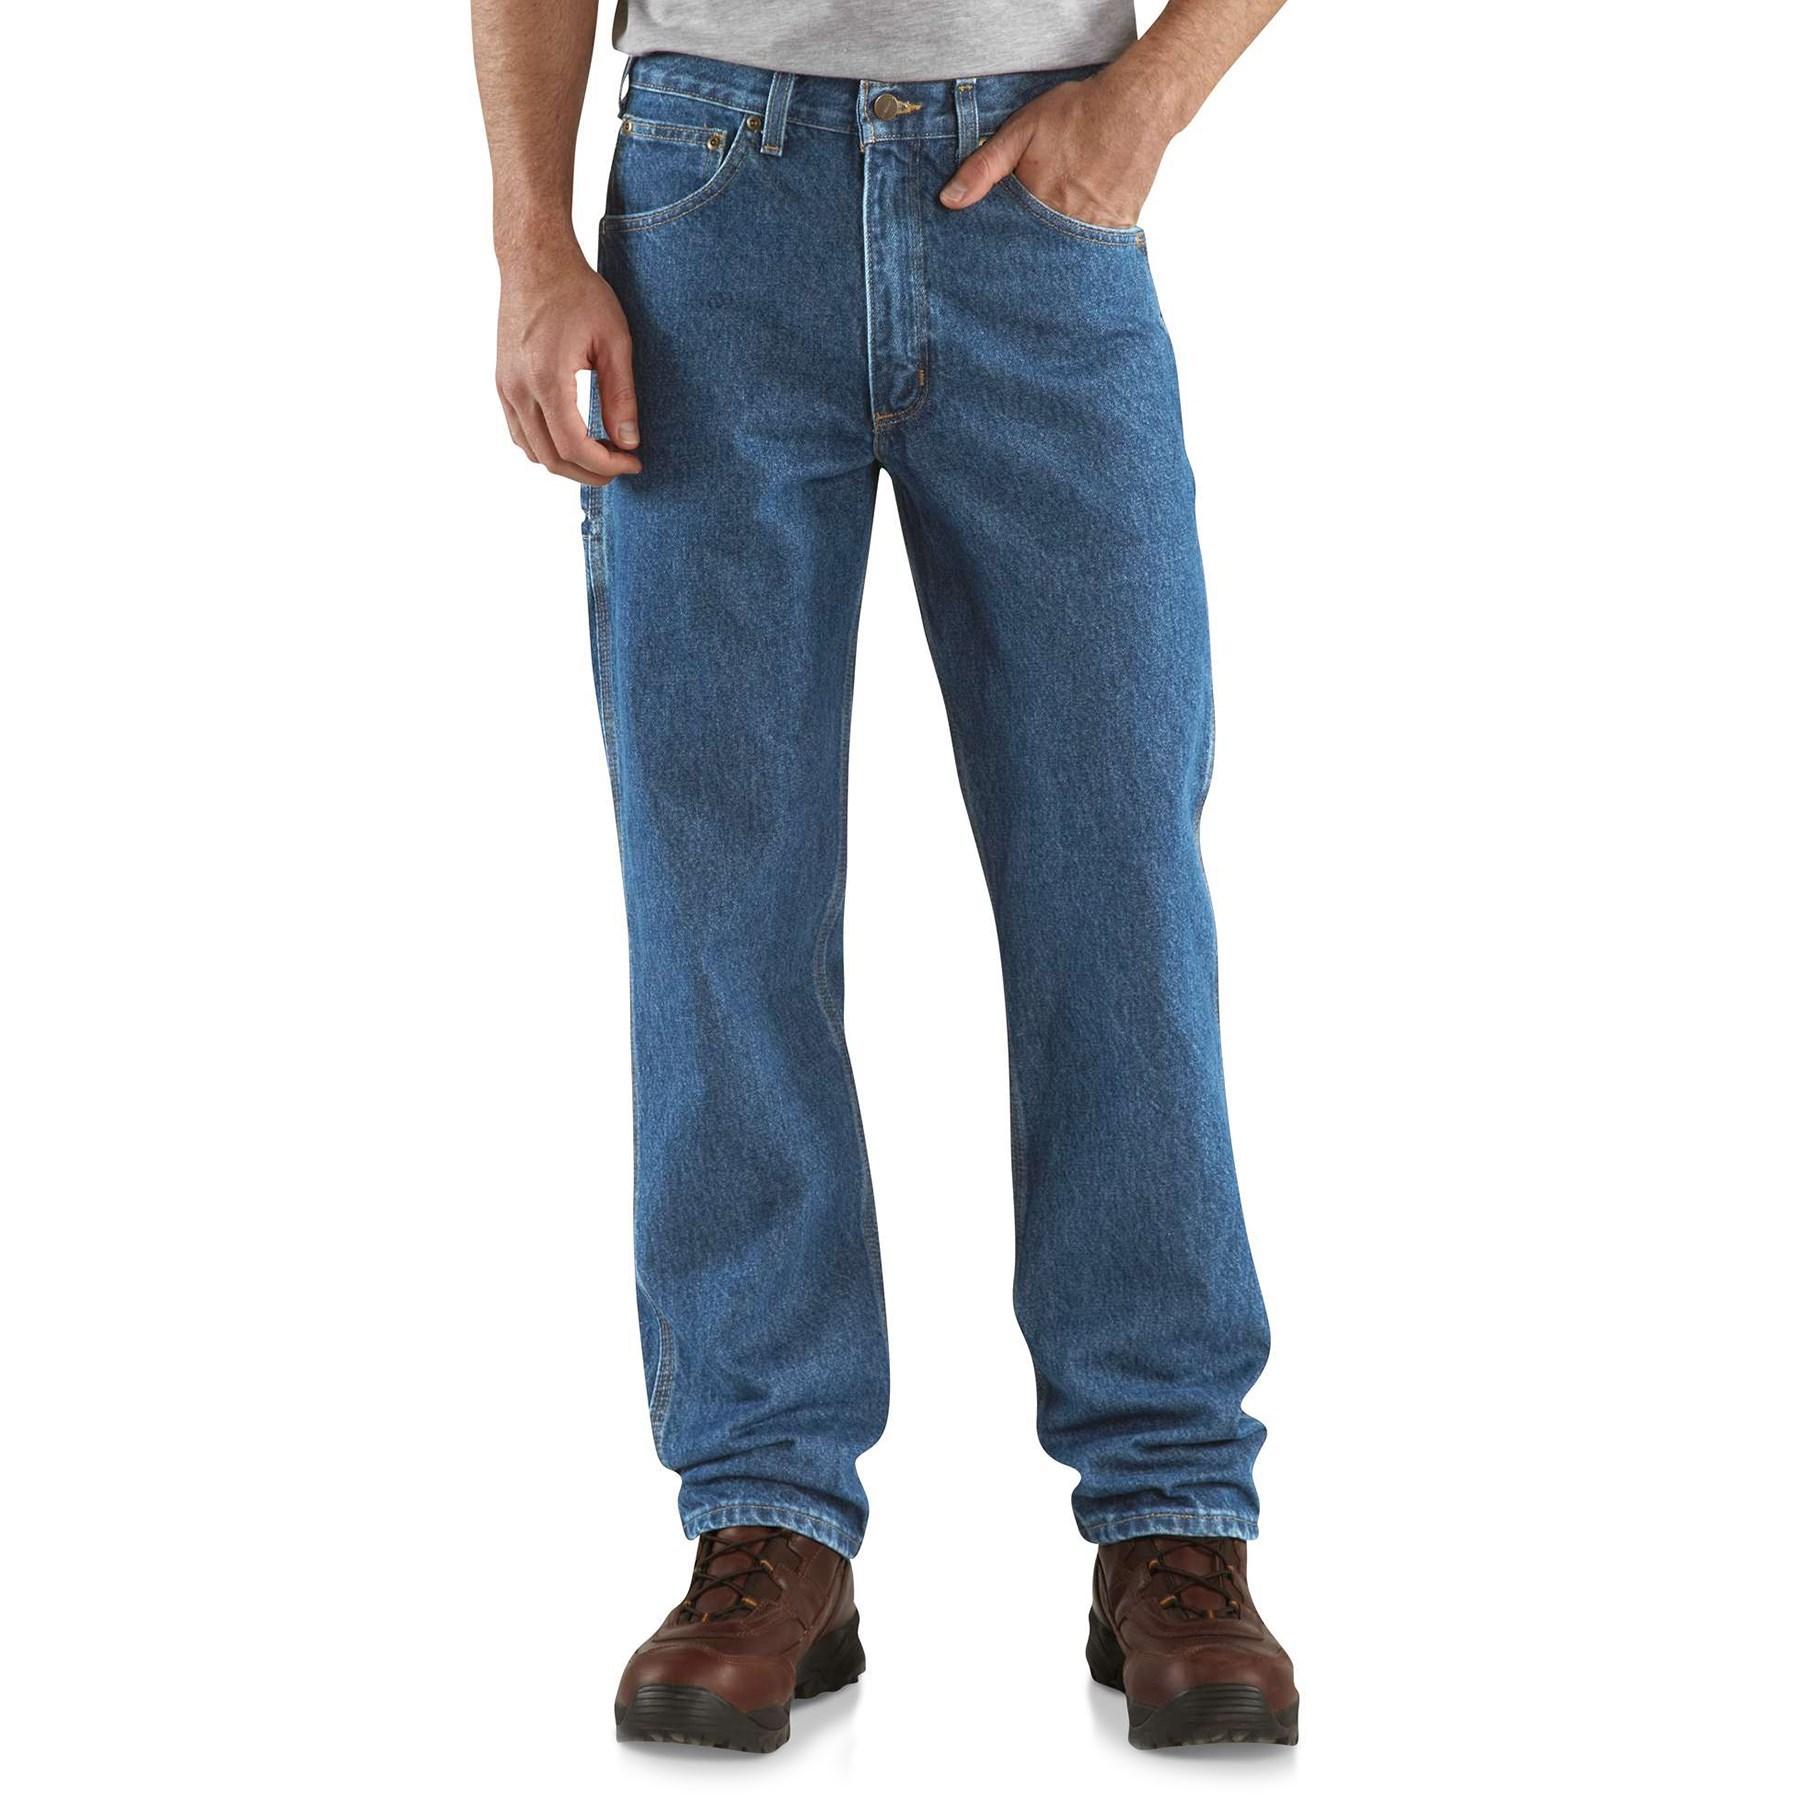 Carhartt Denim B171 Carpenter Jeans in Blue for Men - Lyst